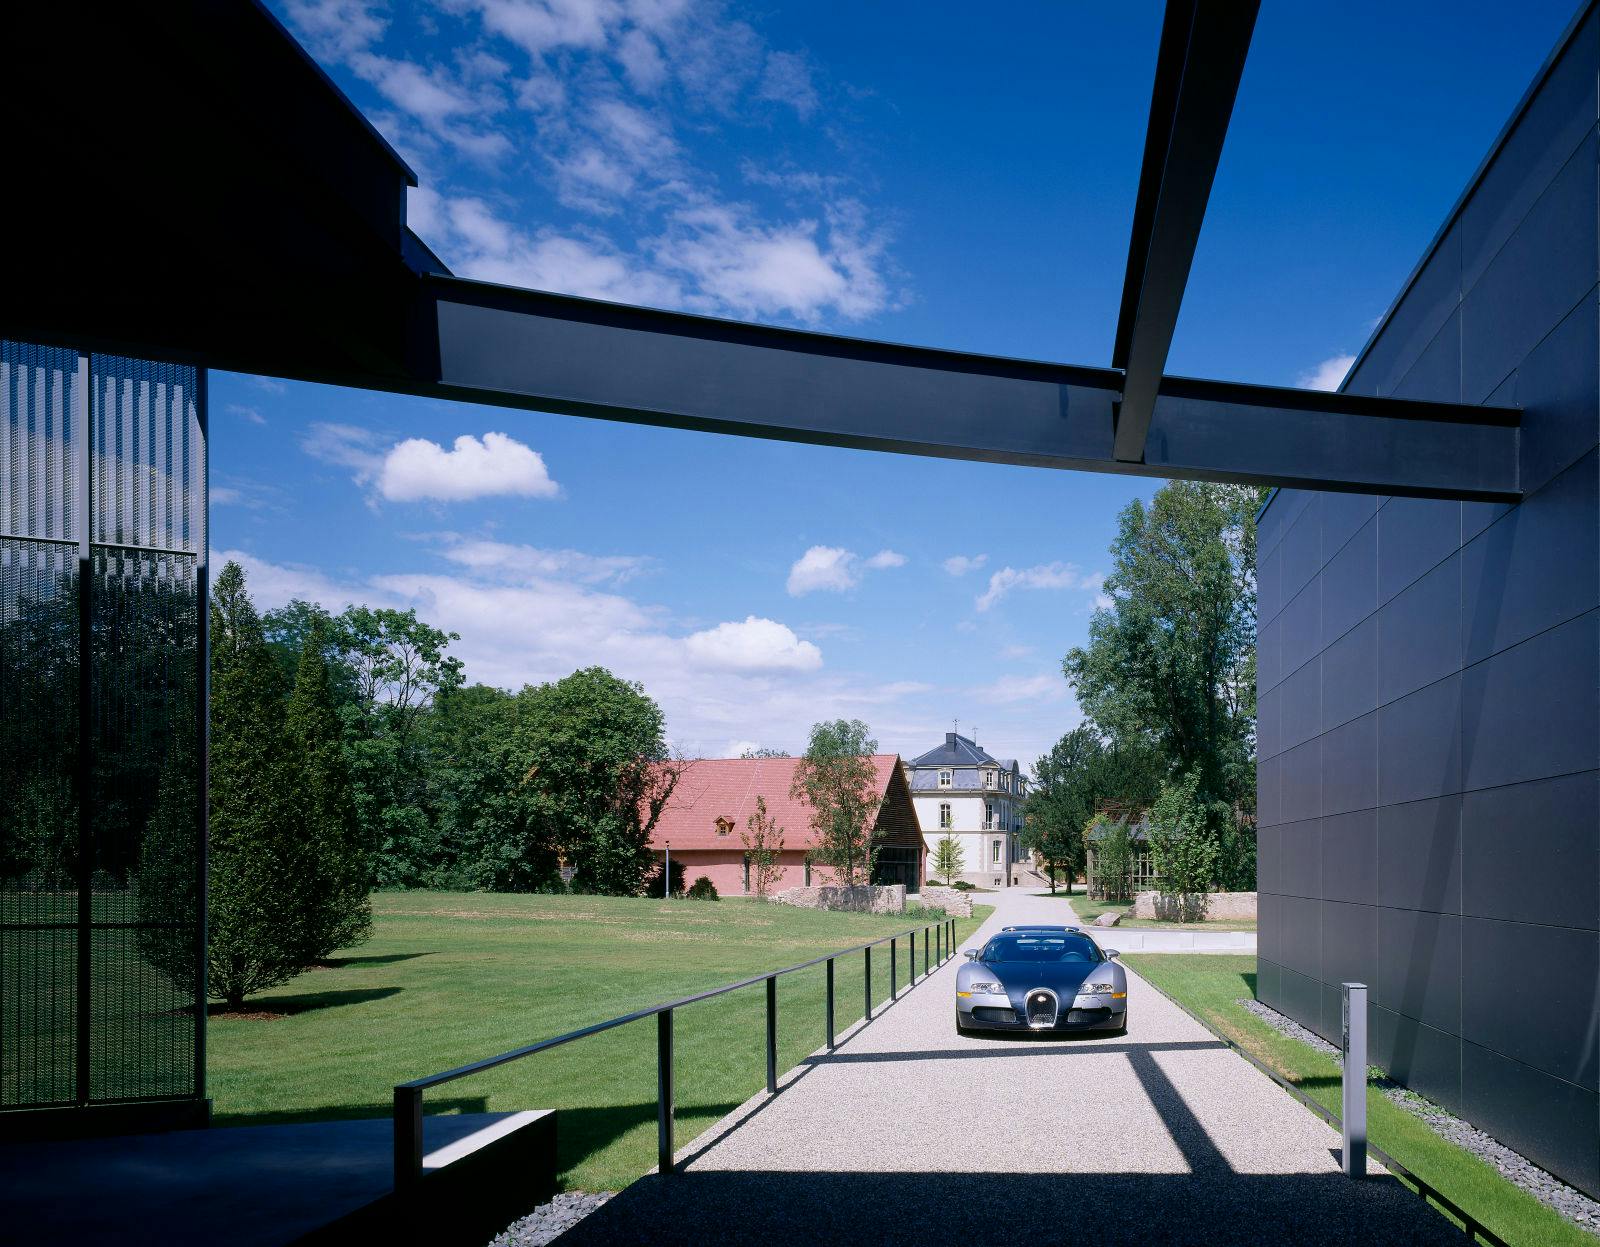 La Bugatti Veyron 16.4 en tant que lien entre le site historique et l'Atelier moderne